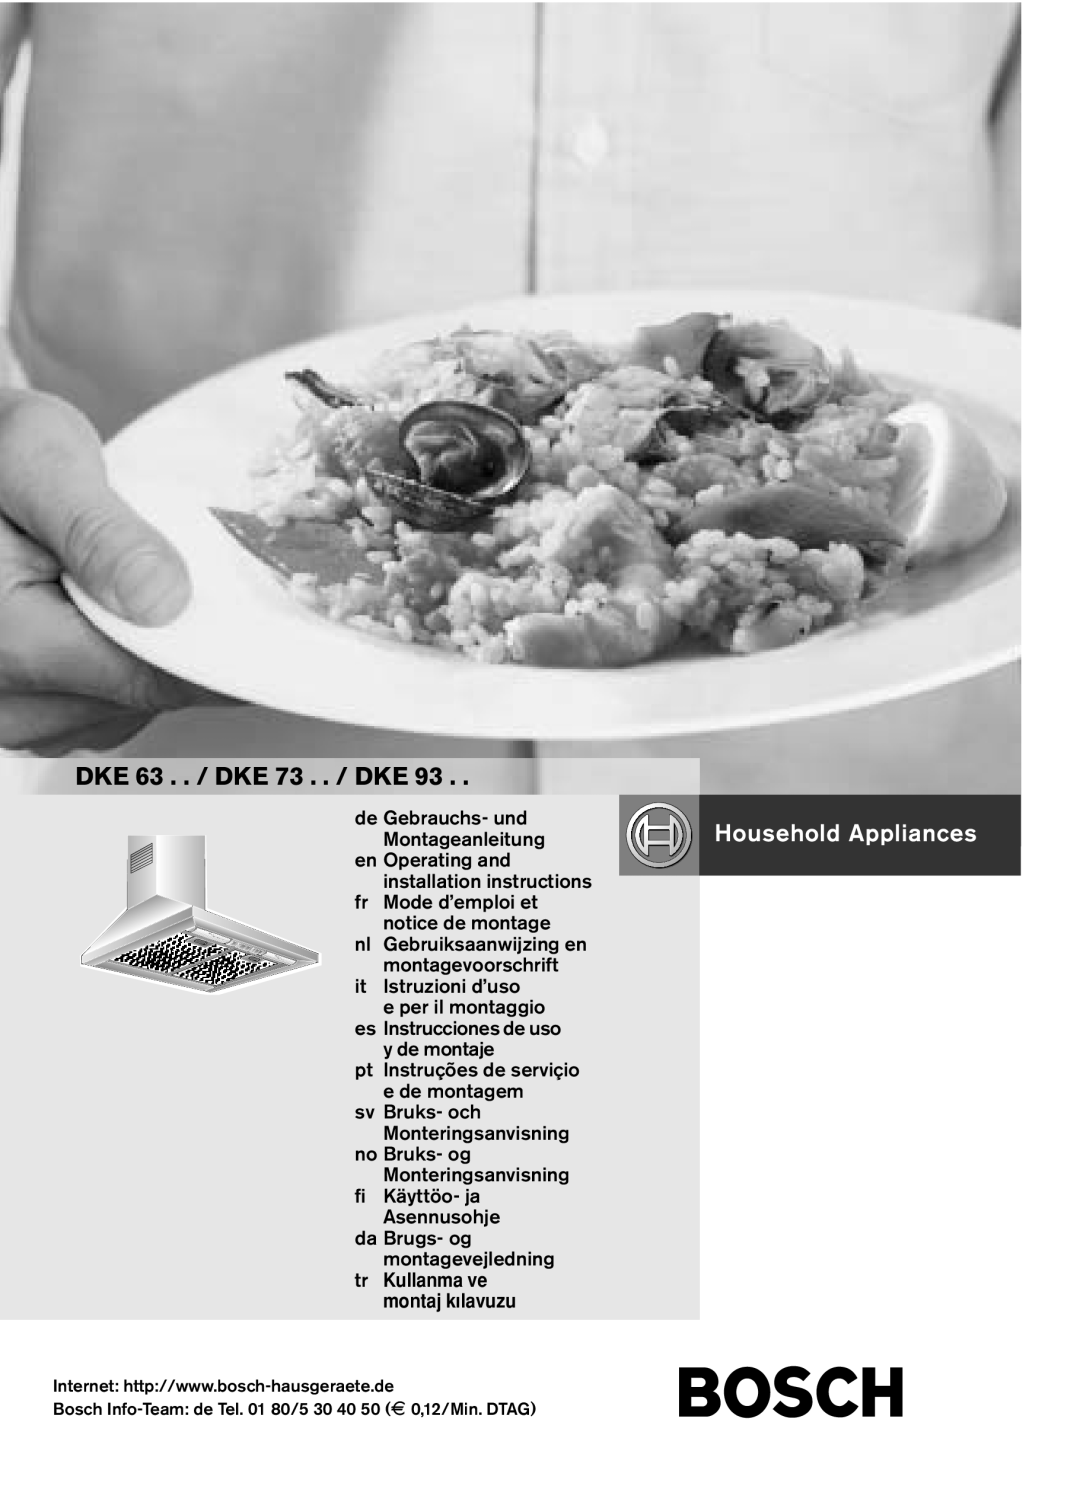 Bosch Appliances installation instructions DKE 63 . . / DKE 73 . . / DKE 